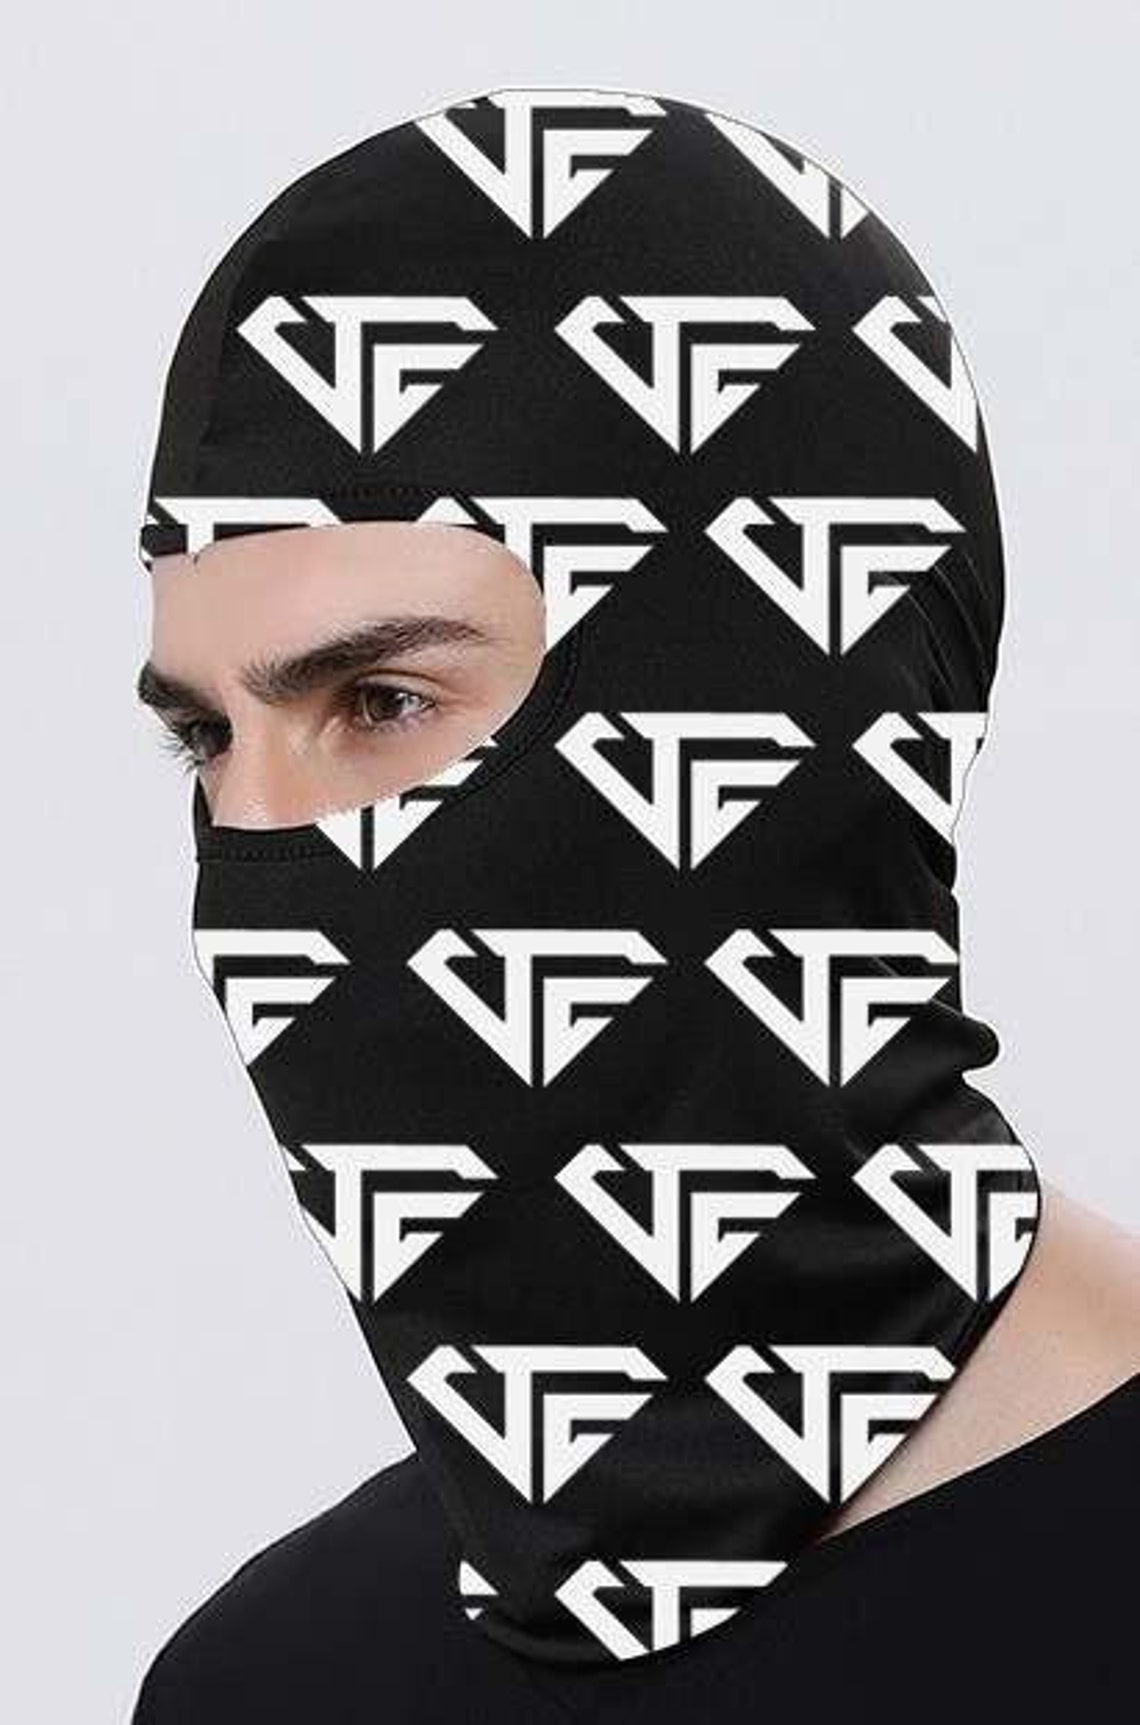 Balaclava for Men-pooh Shiesty Mask Full Face Mask Cover-ski - Etsy UK